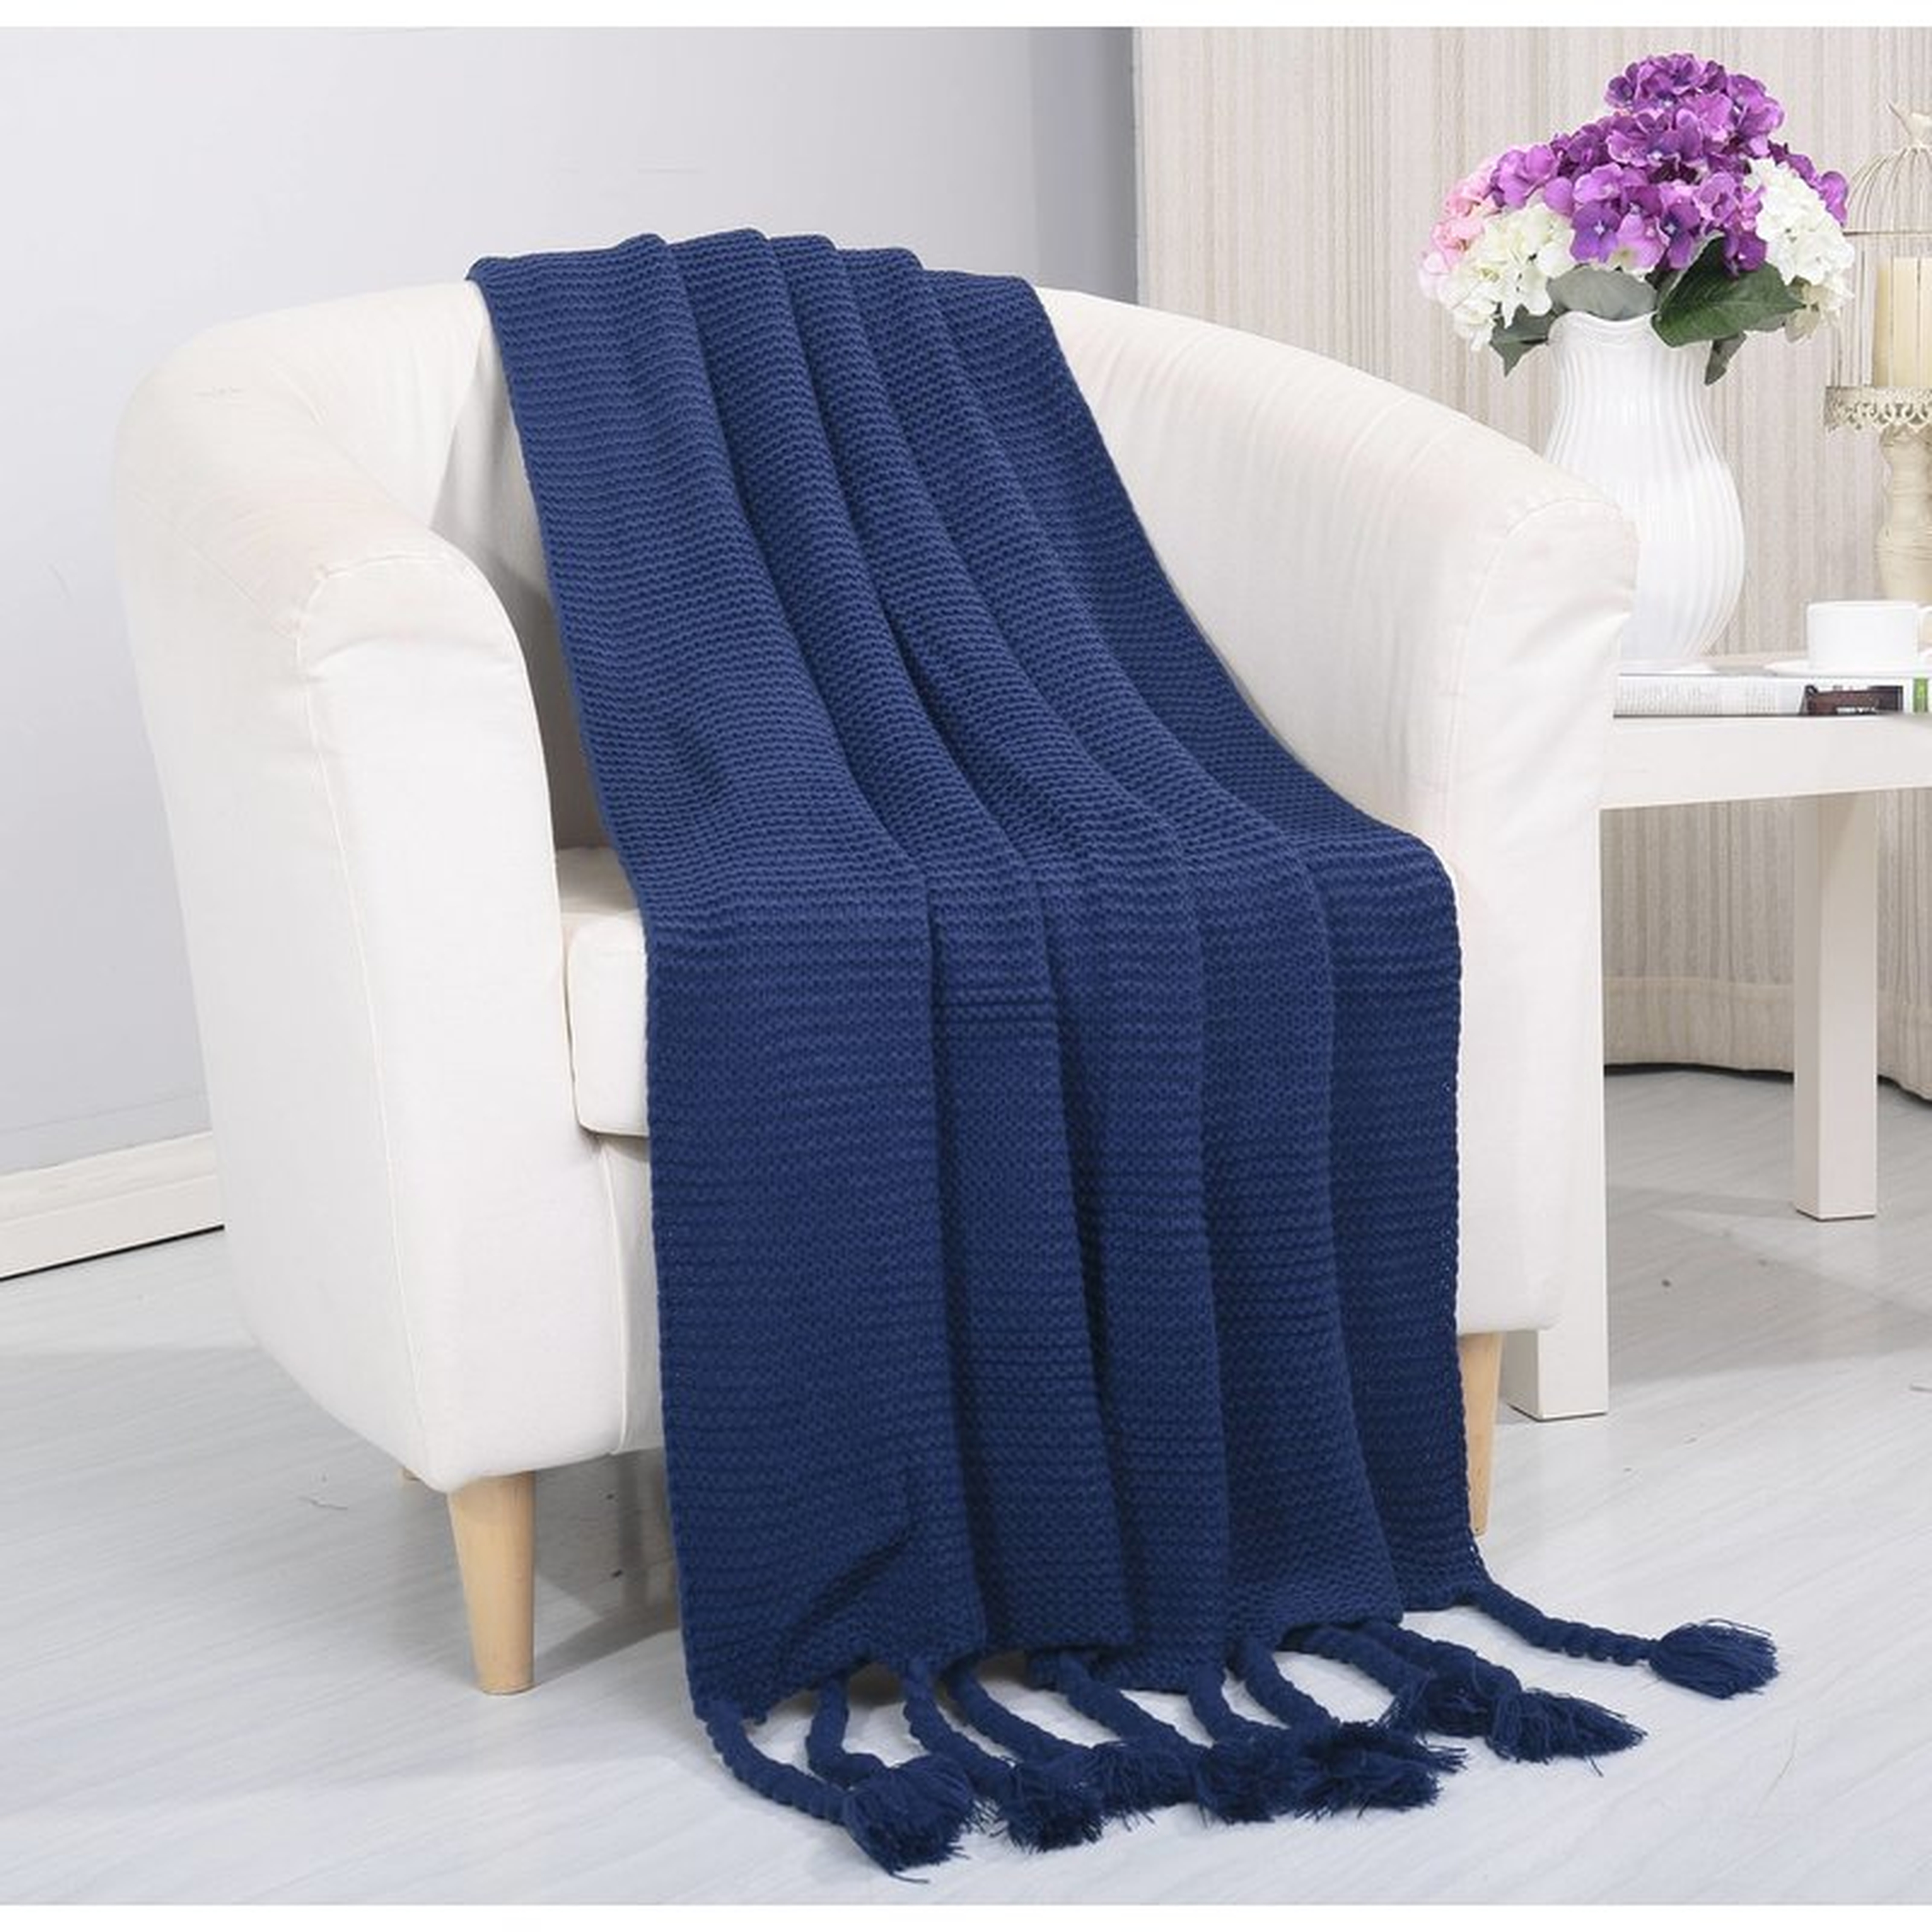 Lederer Woven Vintage Knitted Throw Blanket - Wayfair